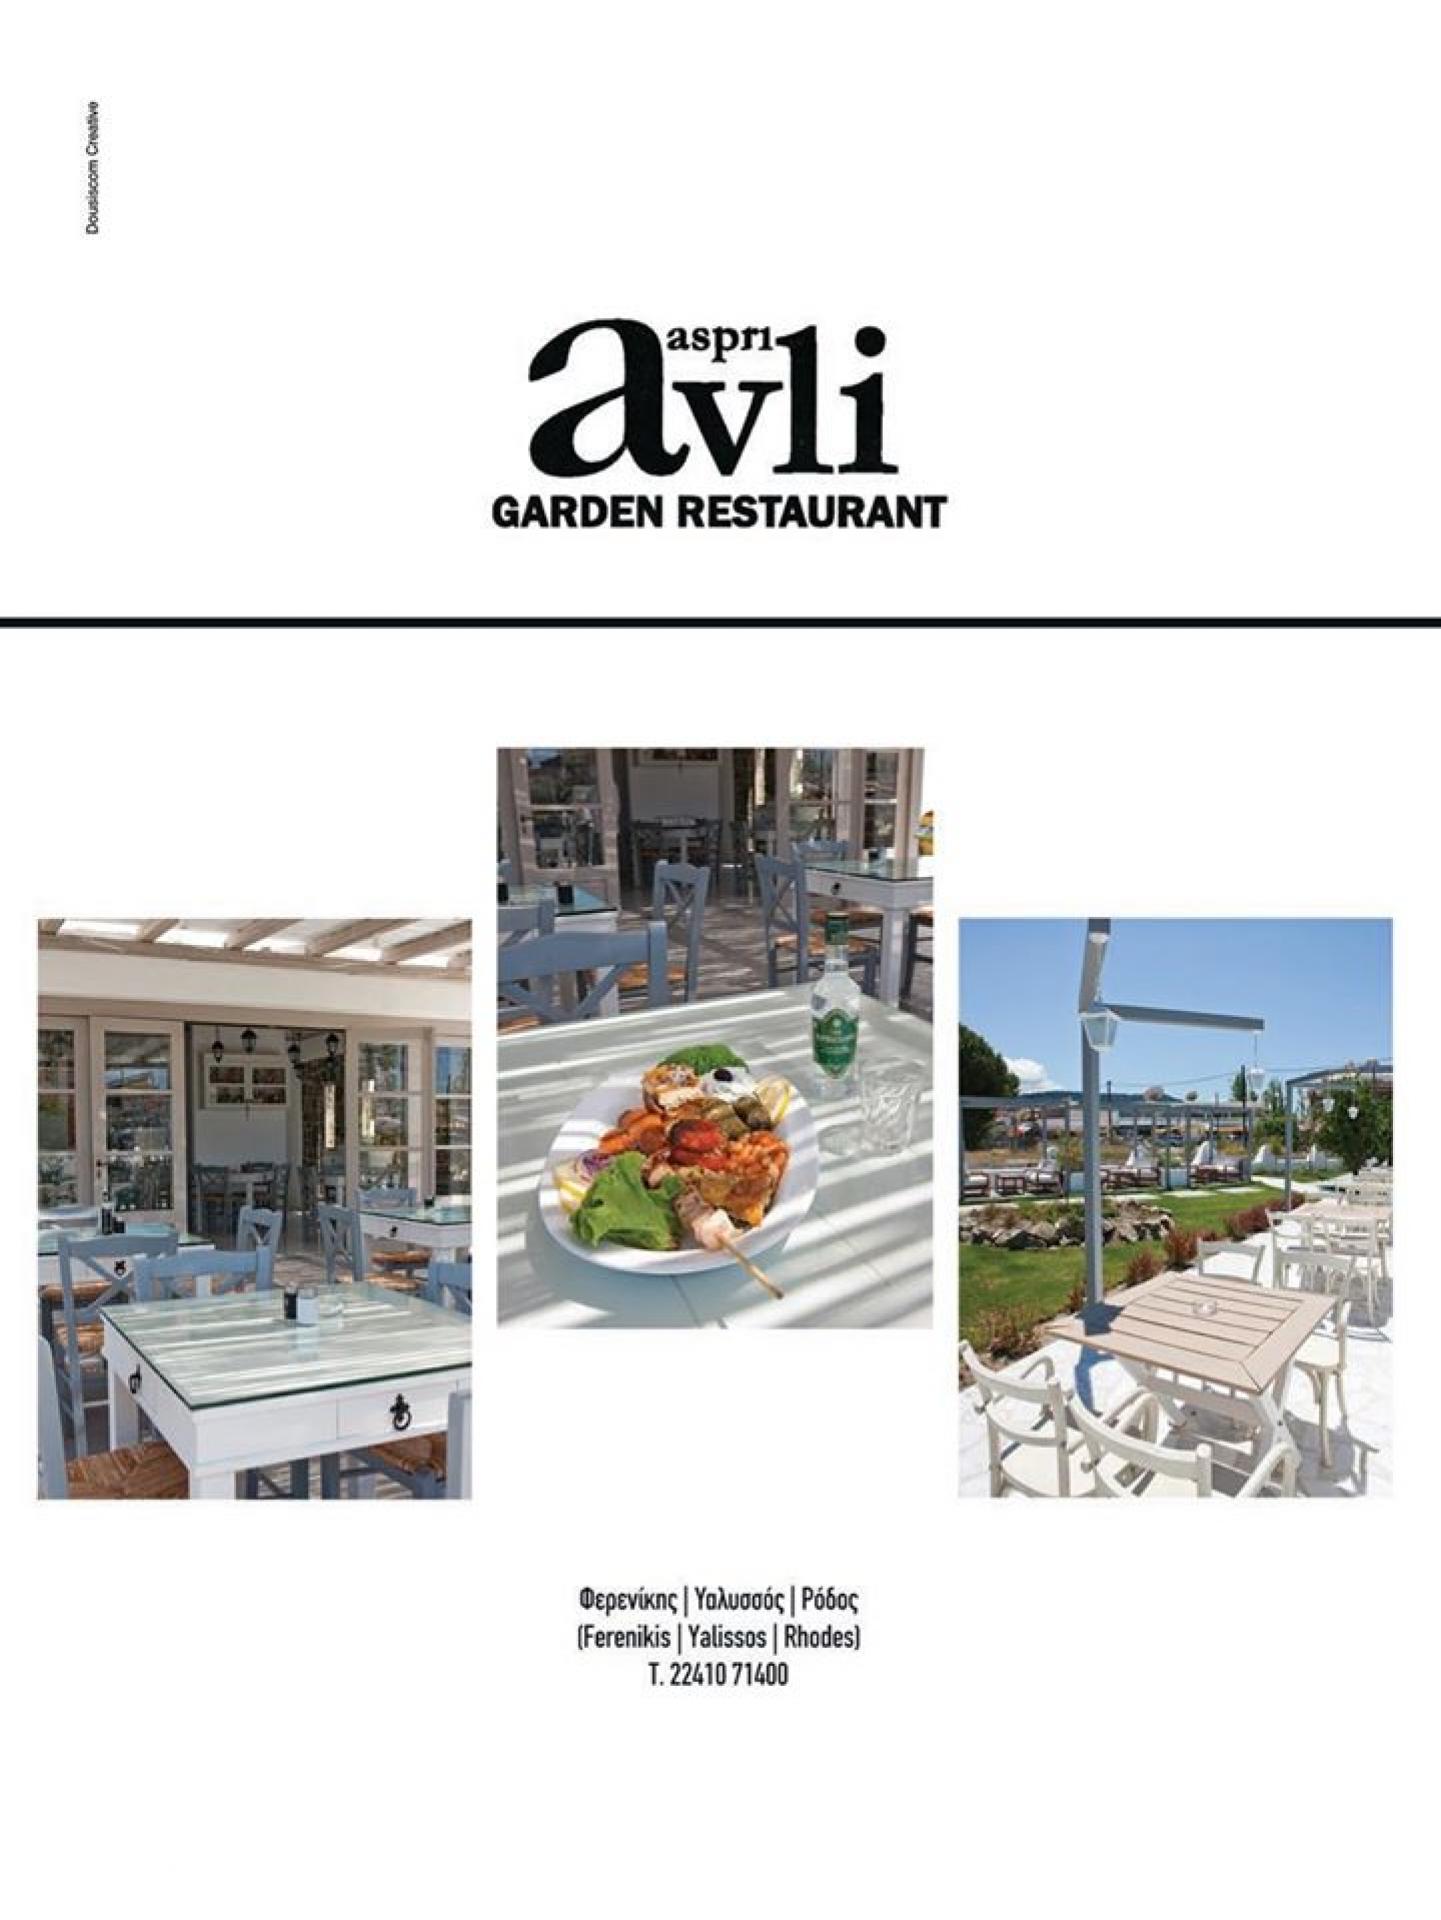 Aspri Avli Garden Restaurant